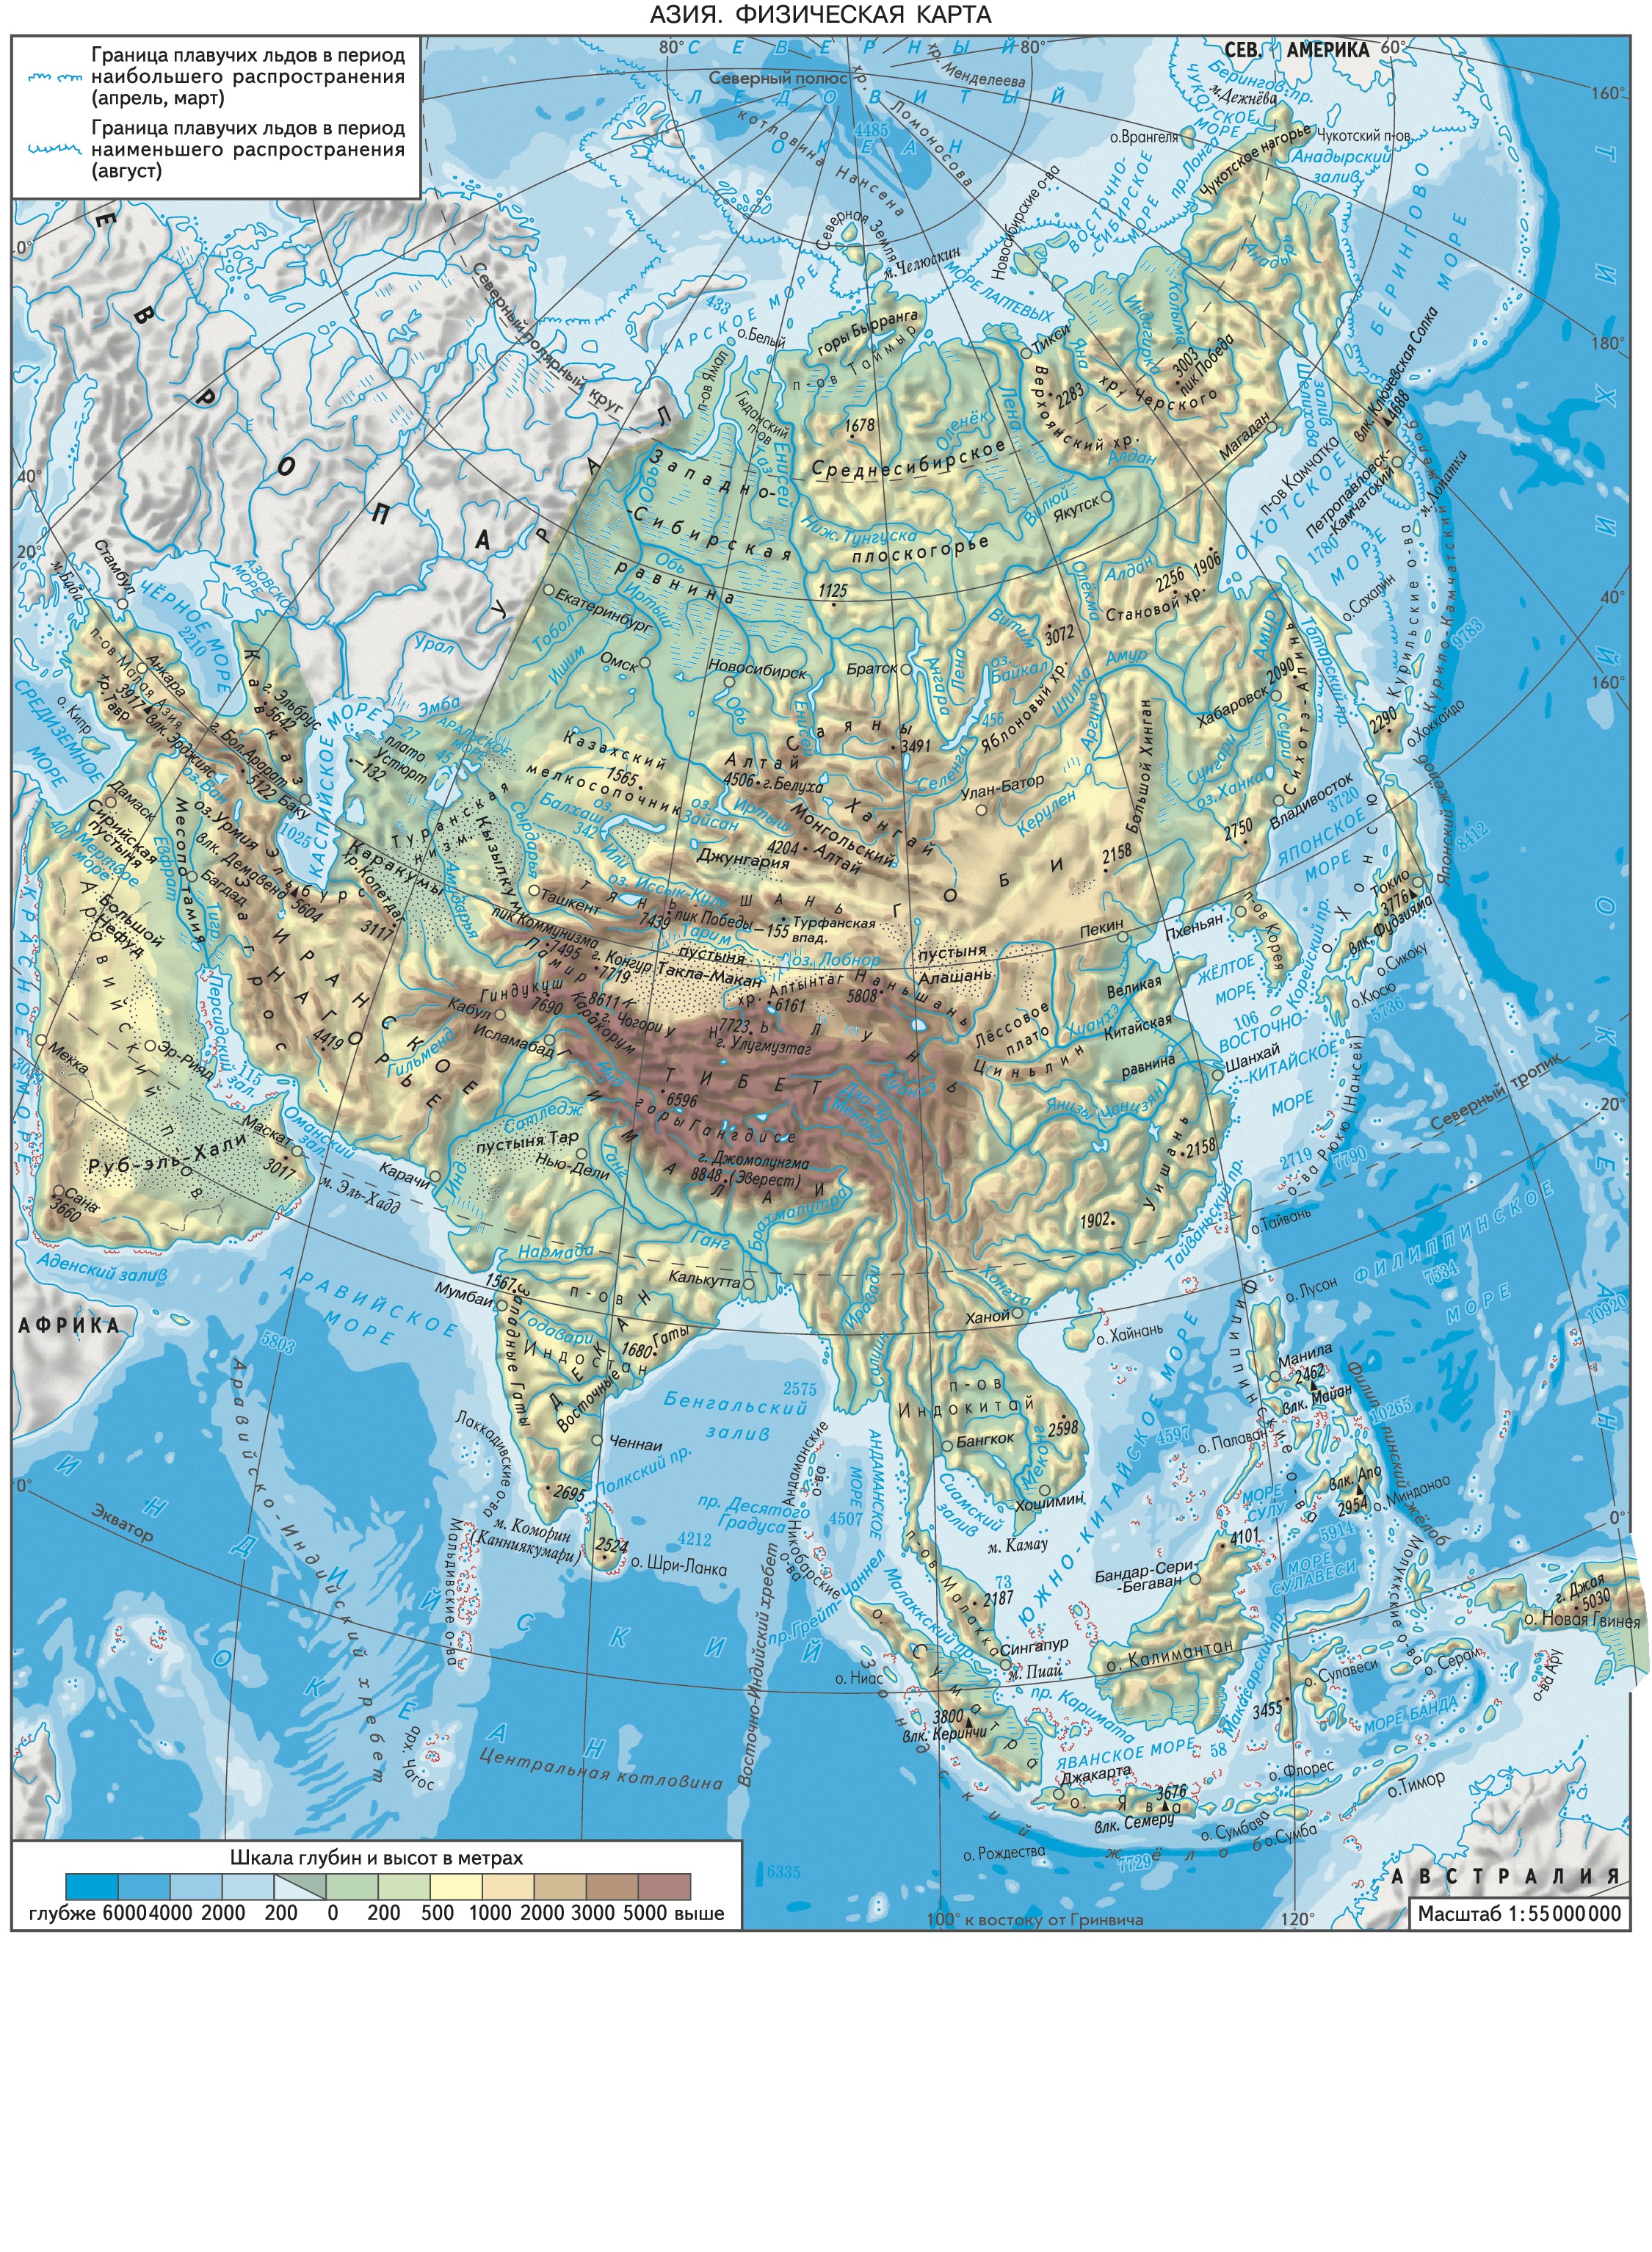 Высота азии над уровнем моря составляет. Физ карта Азии. Карта рельефа Азии. Физическая карта Азии подробная. Физико-географическая карта зарубежной Азии.